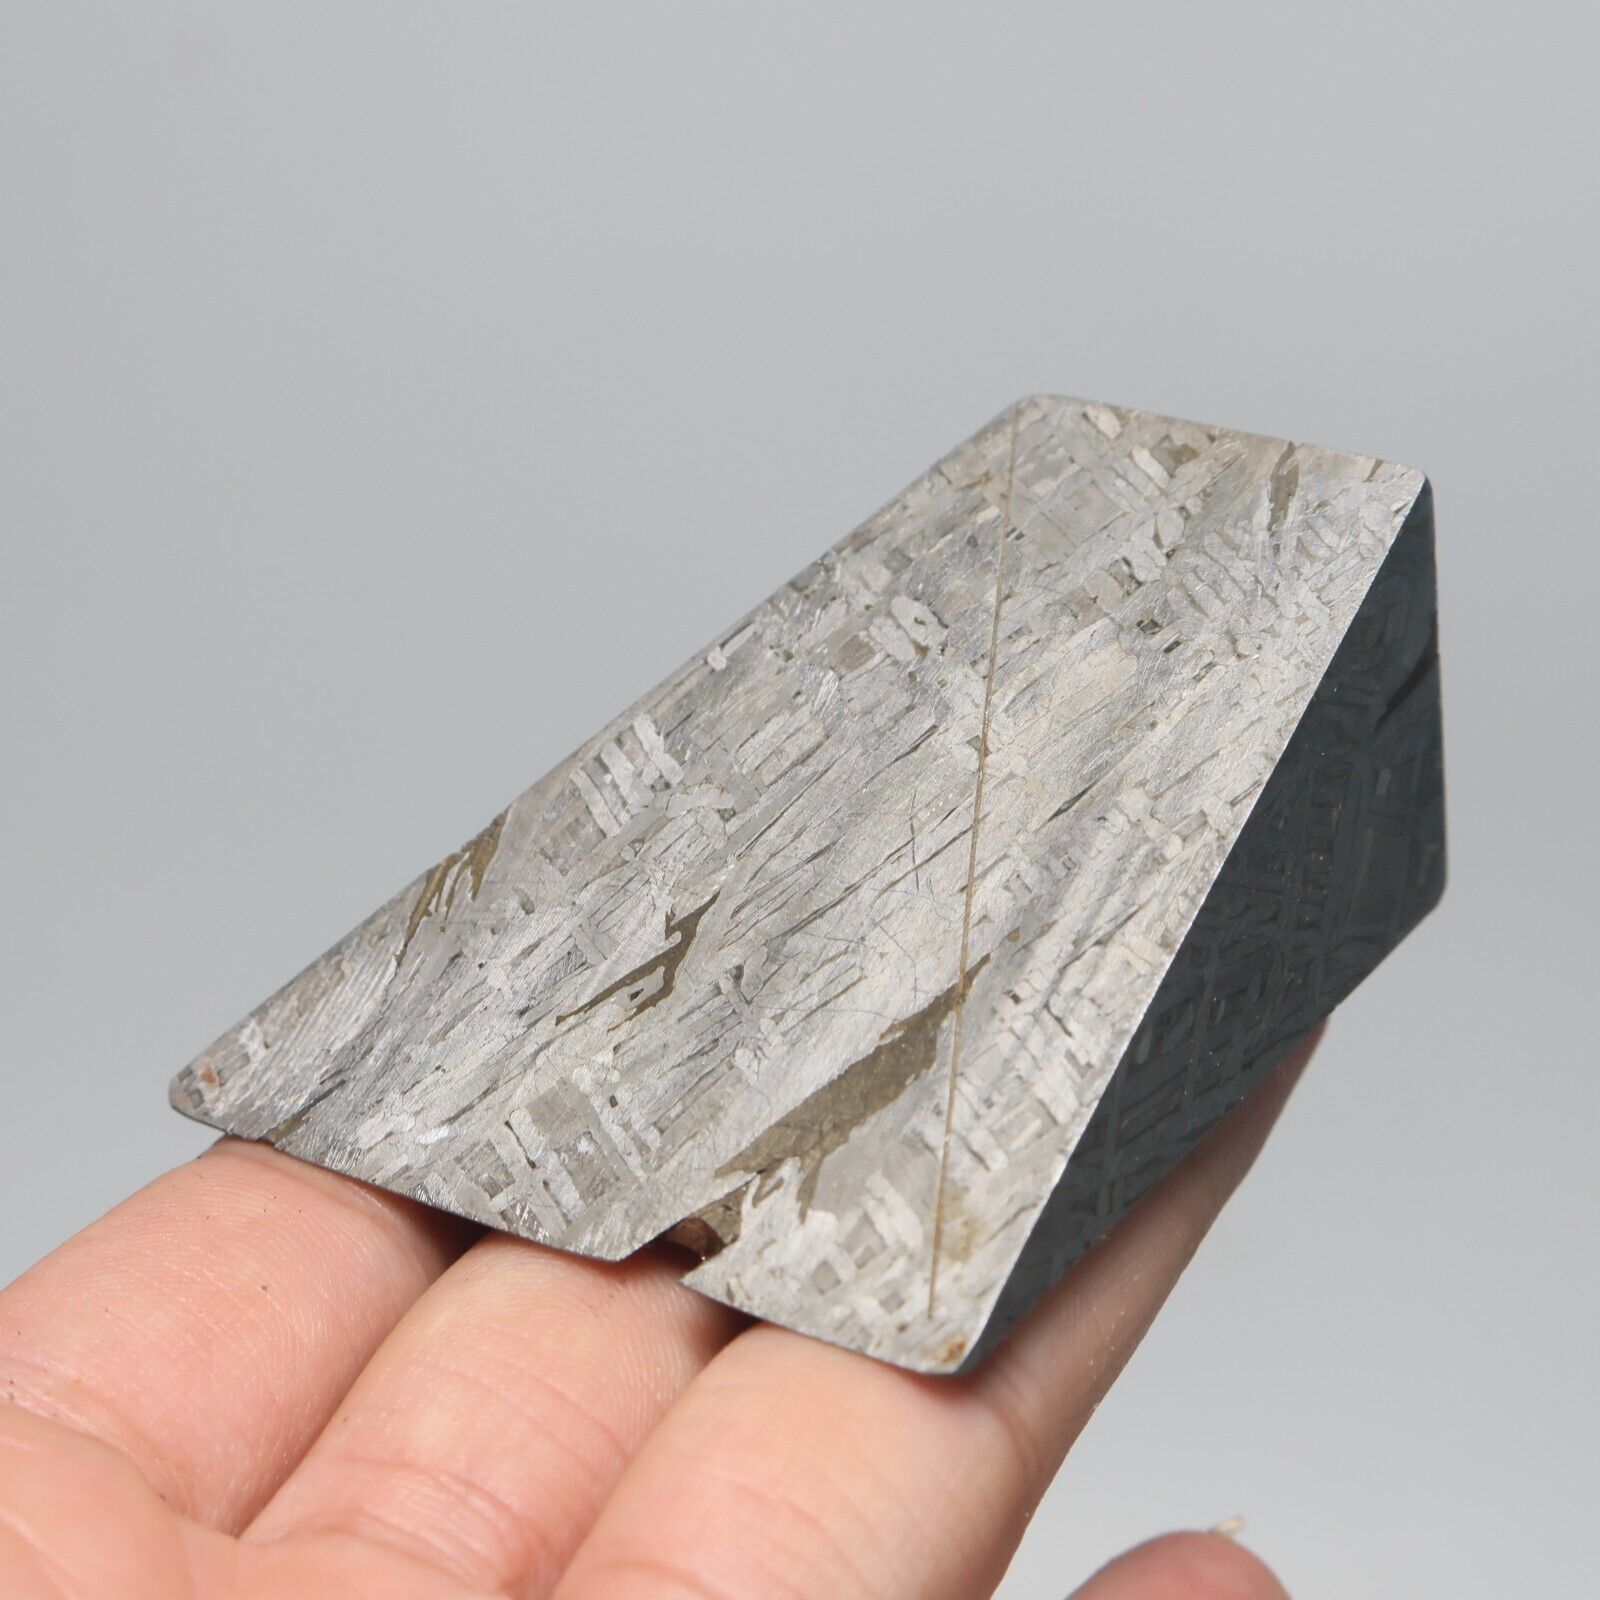 163g  Muonionalusta meteorite part slice C6330